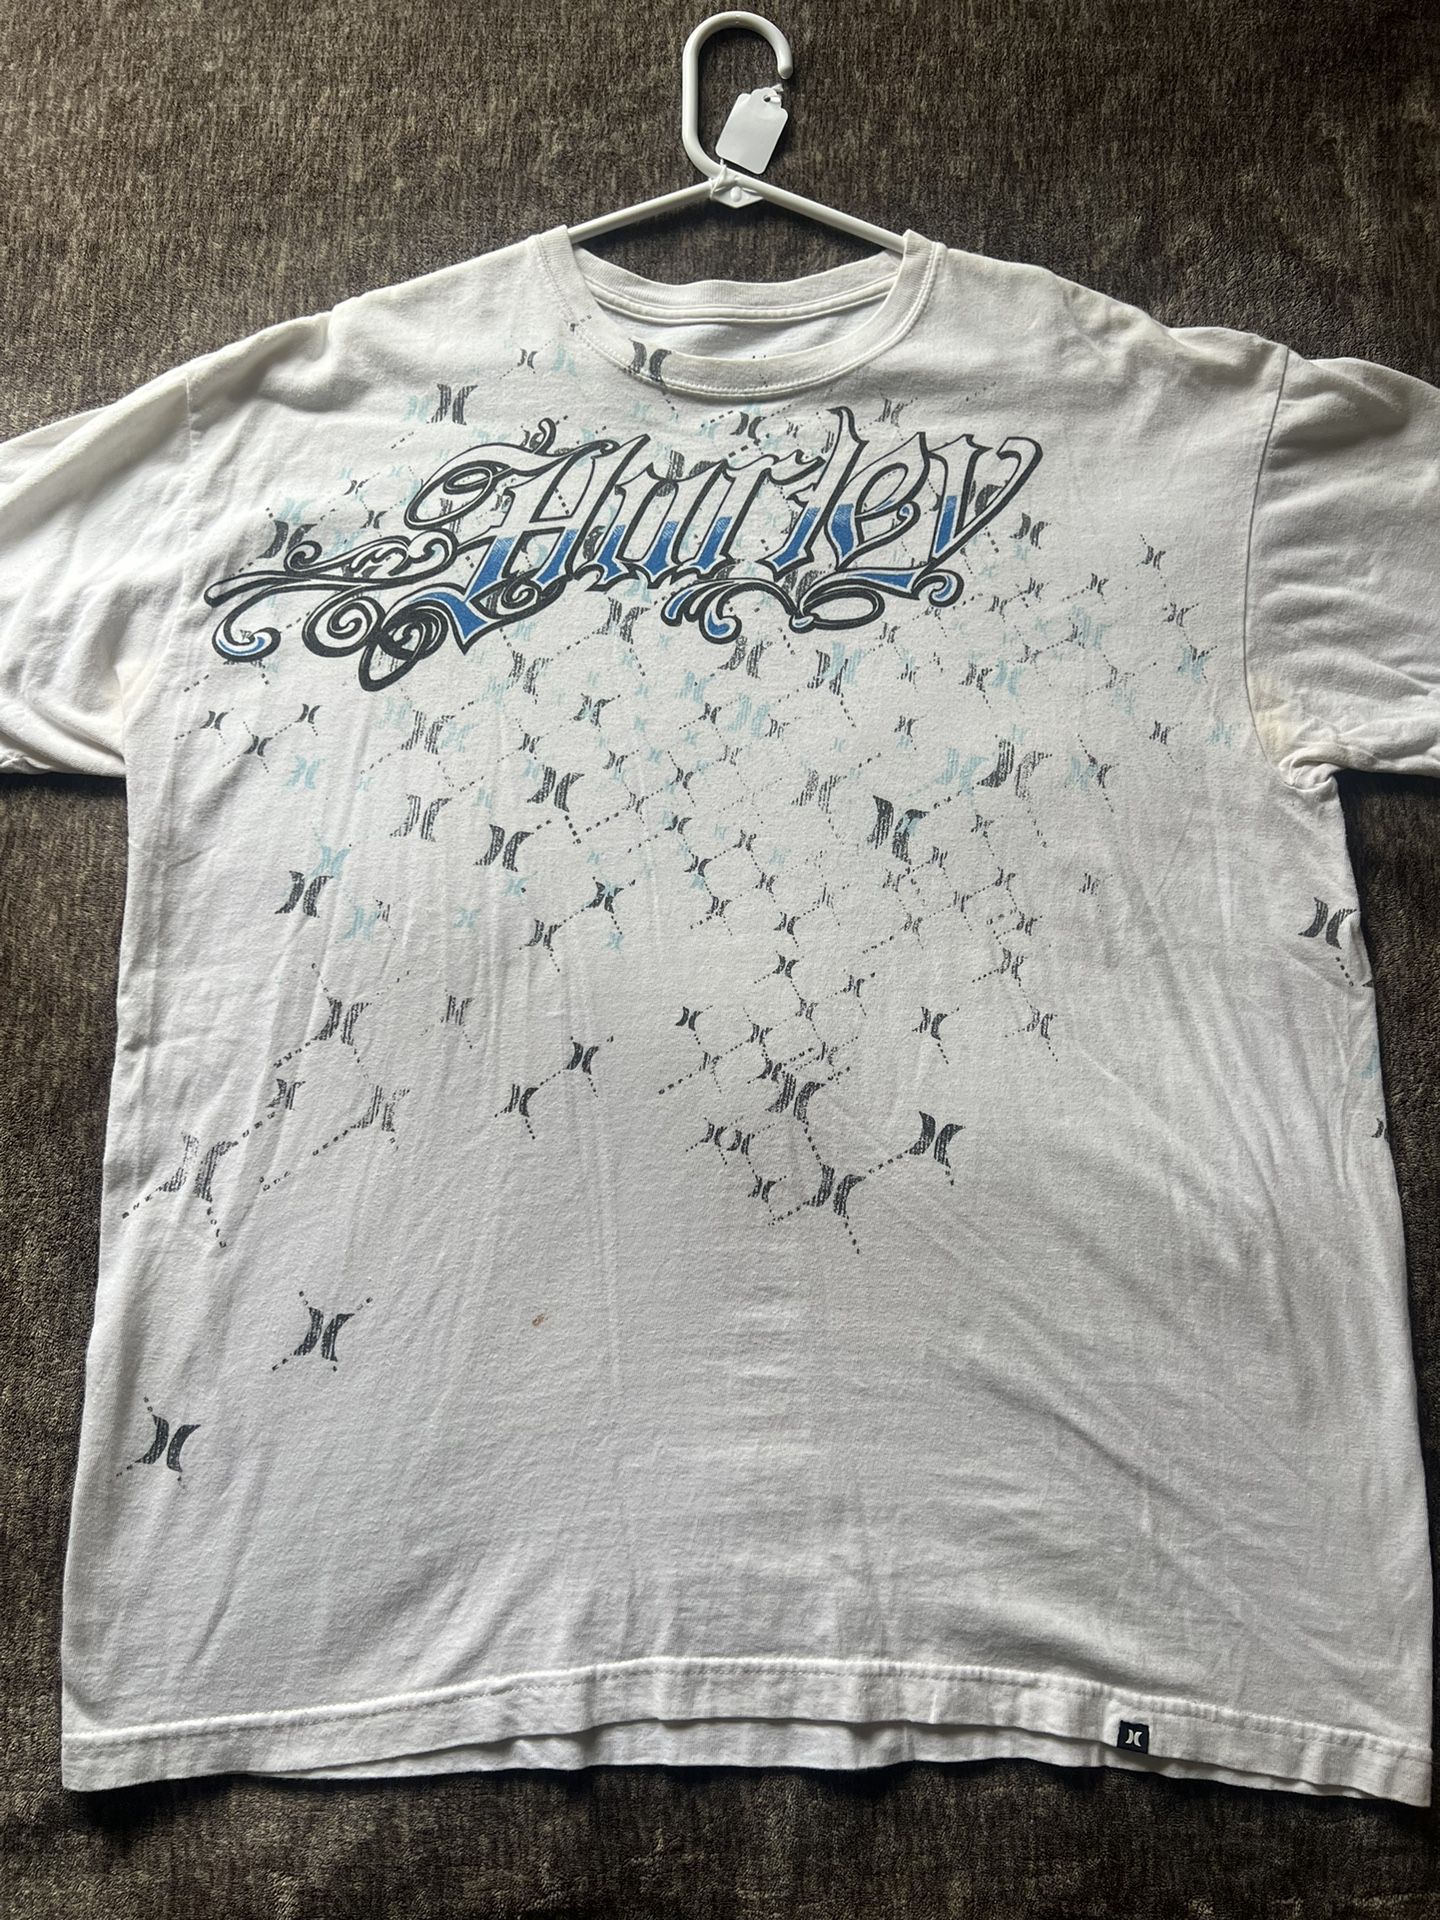 Hurley Y2k Shirt